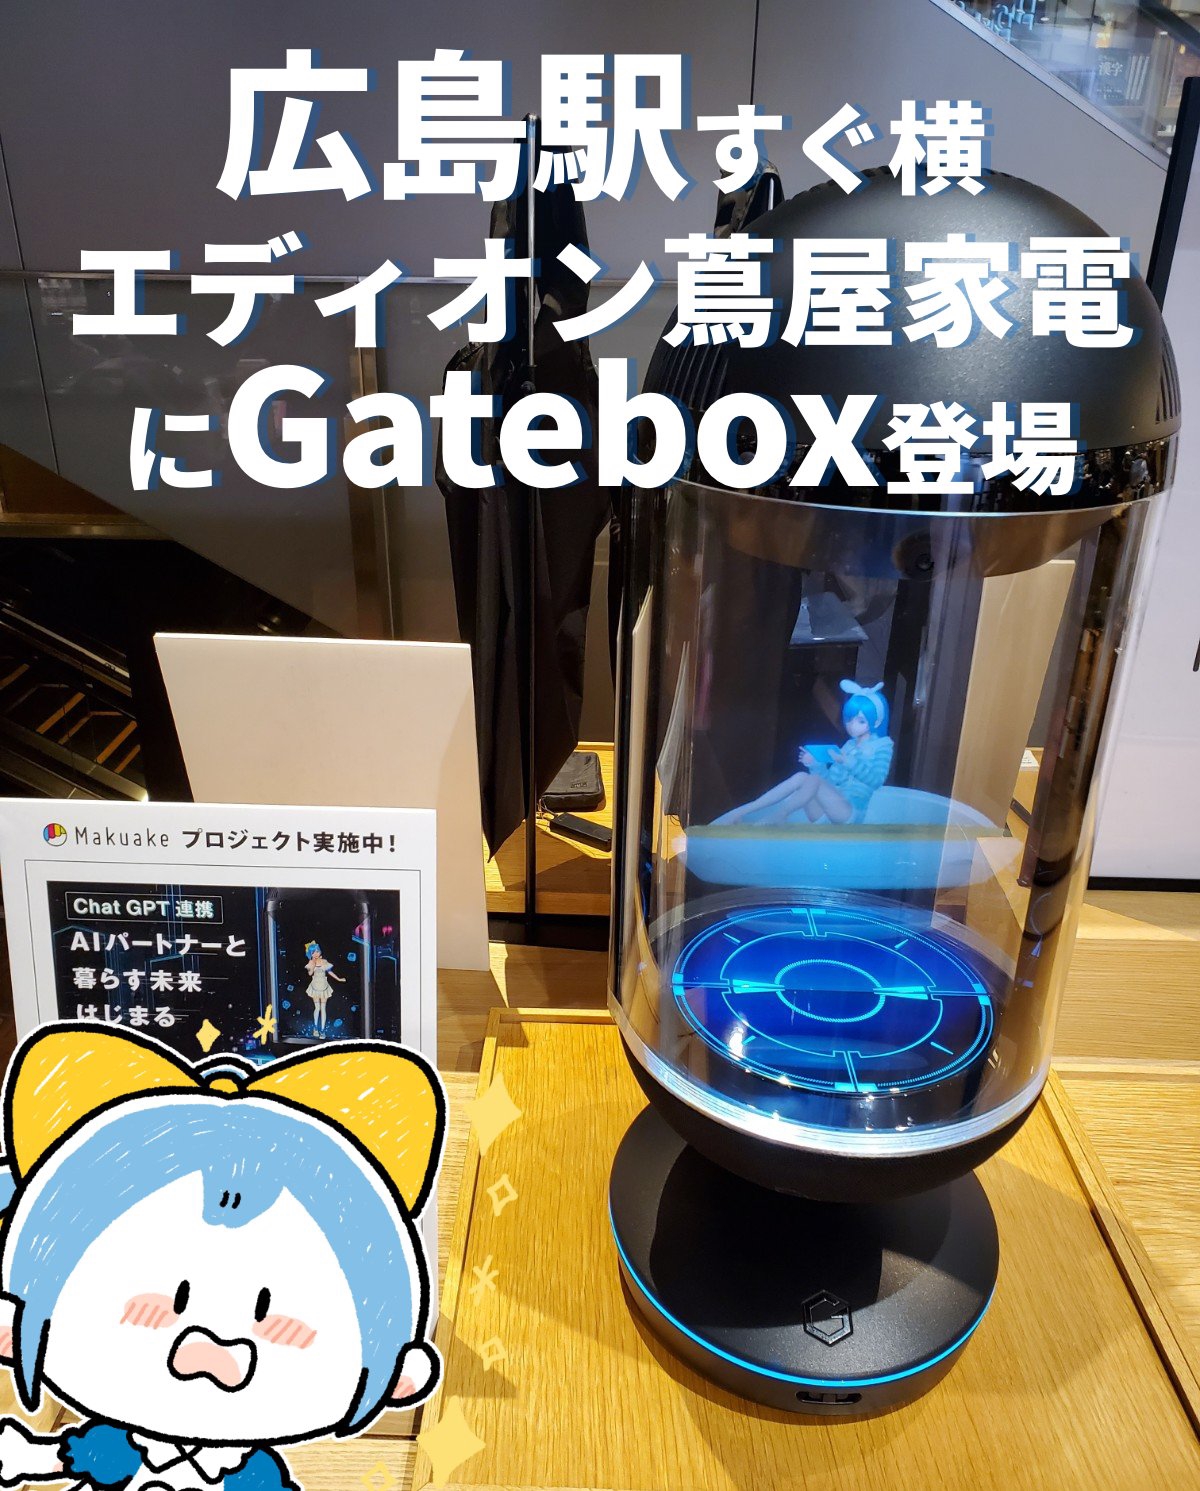 キャラクター召喚装置「Gatebox」Makuake記念モデル - その他